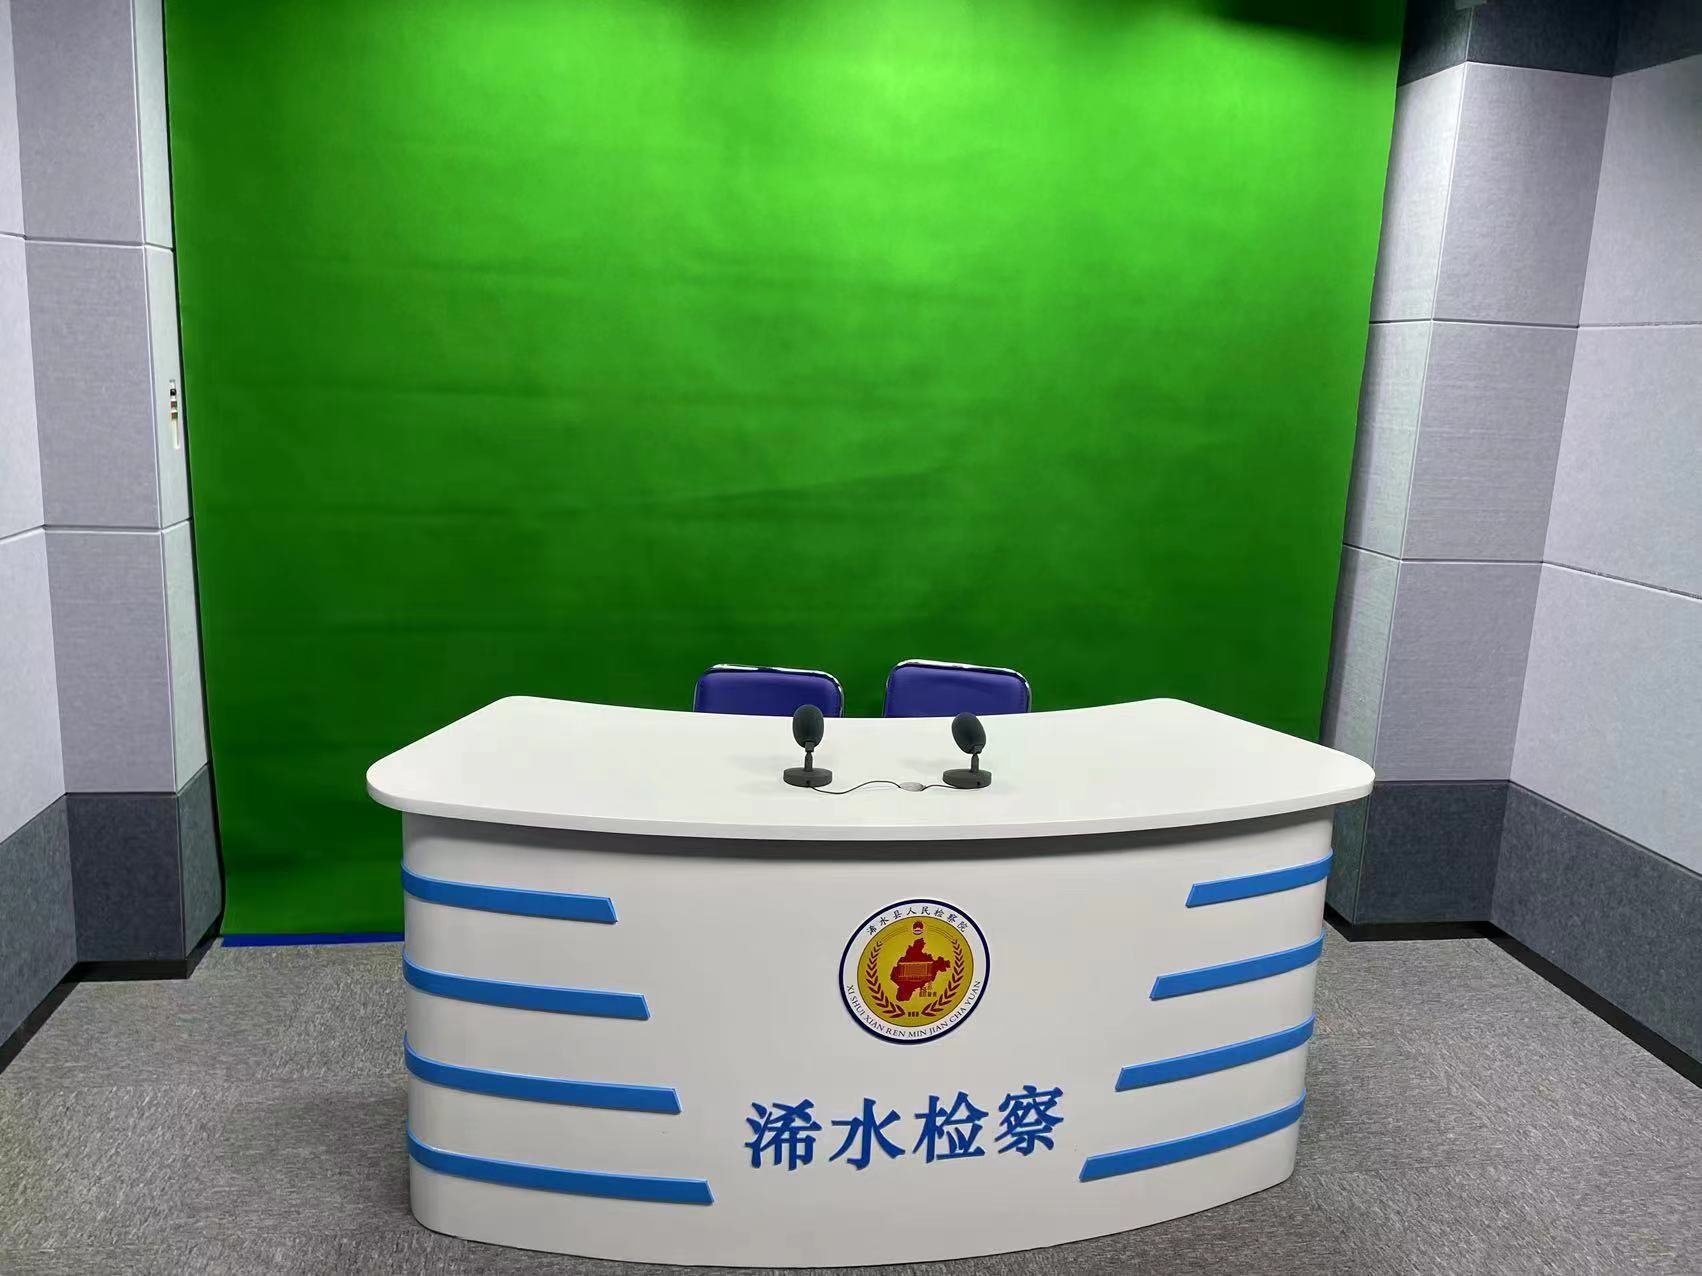 湖北省浠水县人民检察院虚拟演播室(图3)